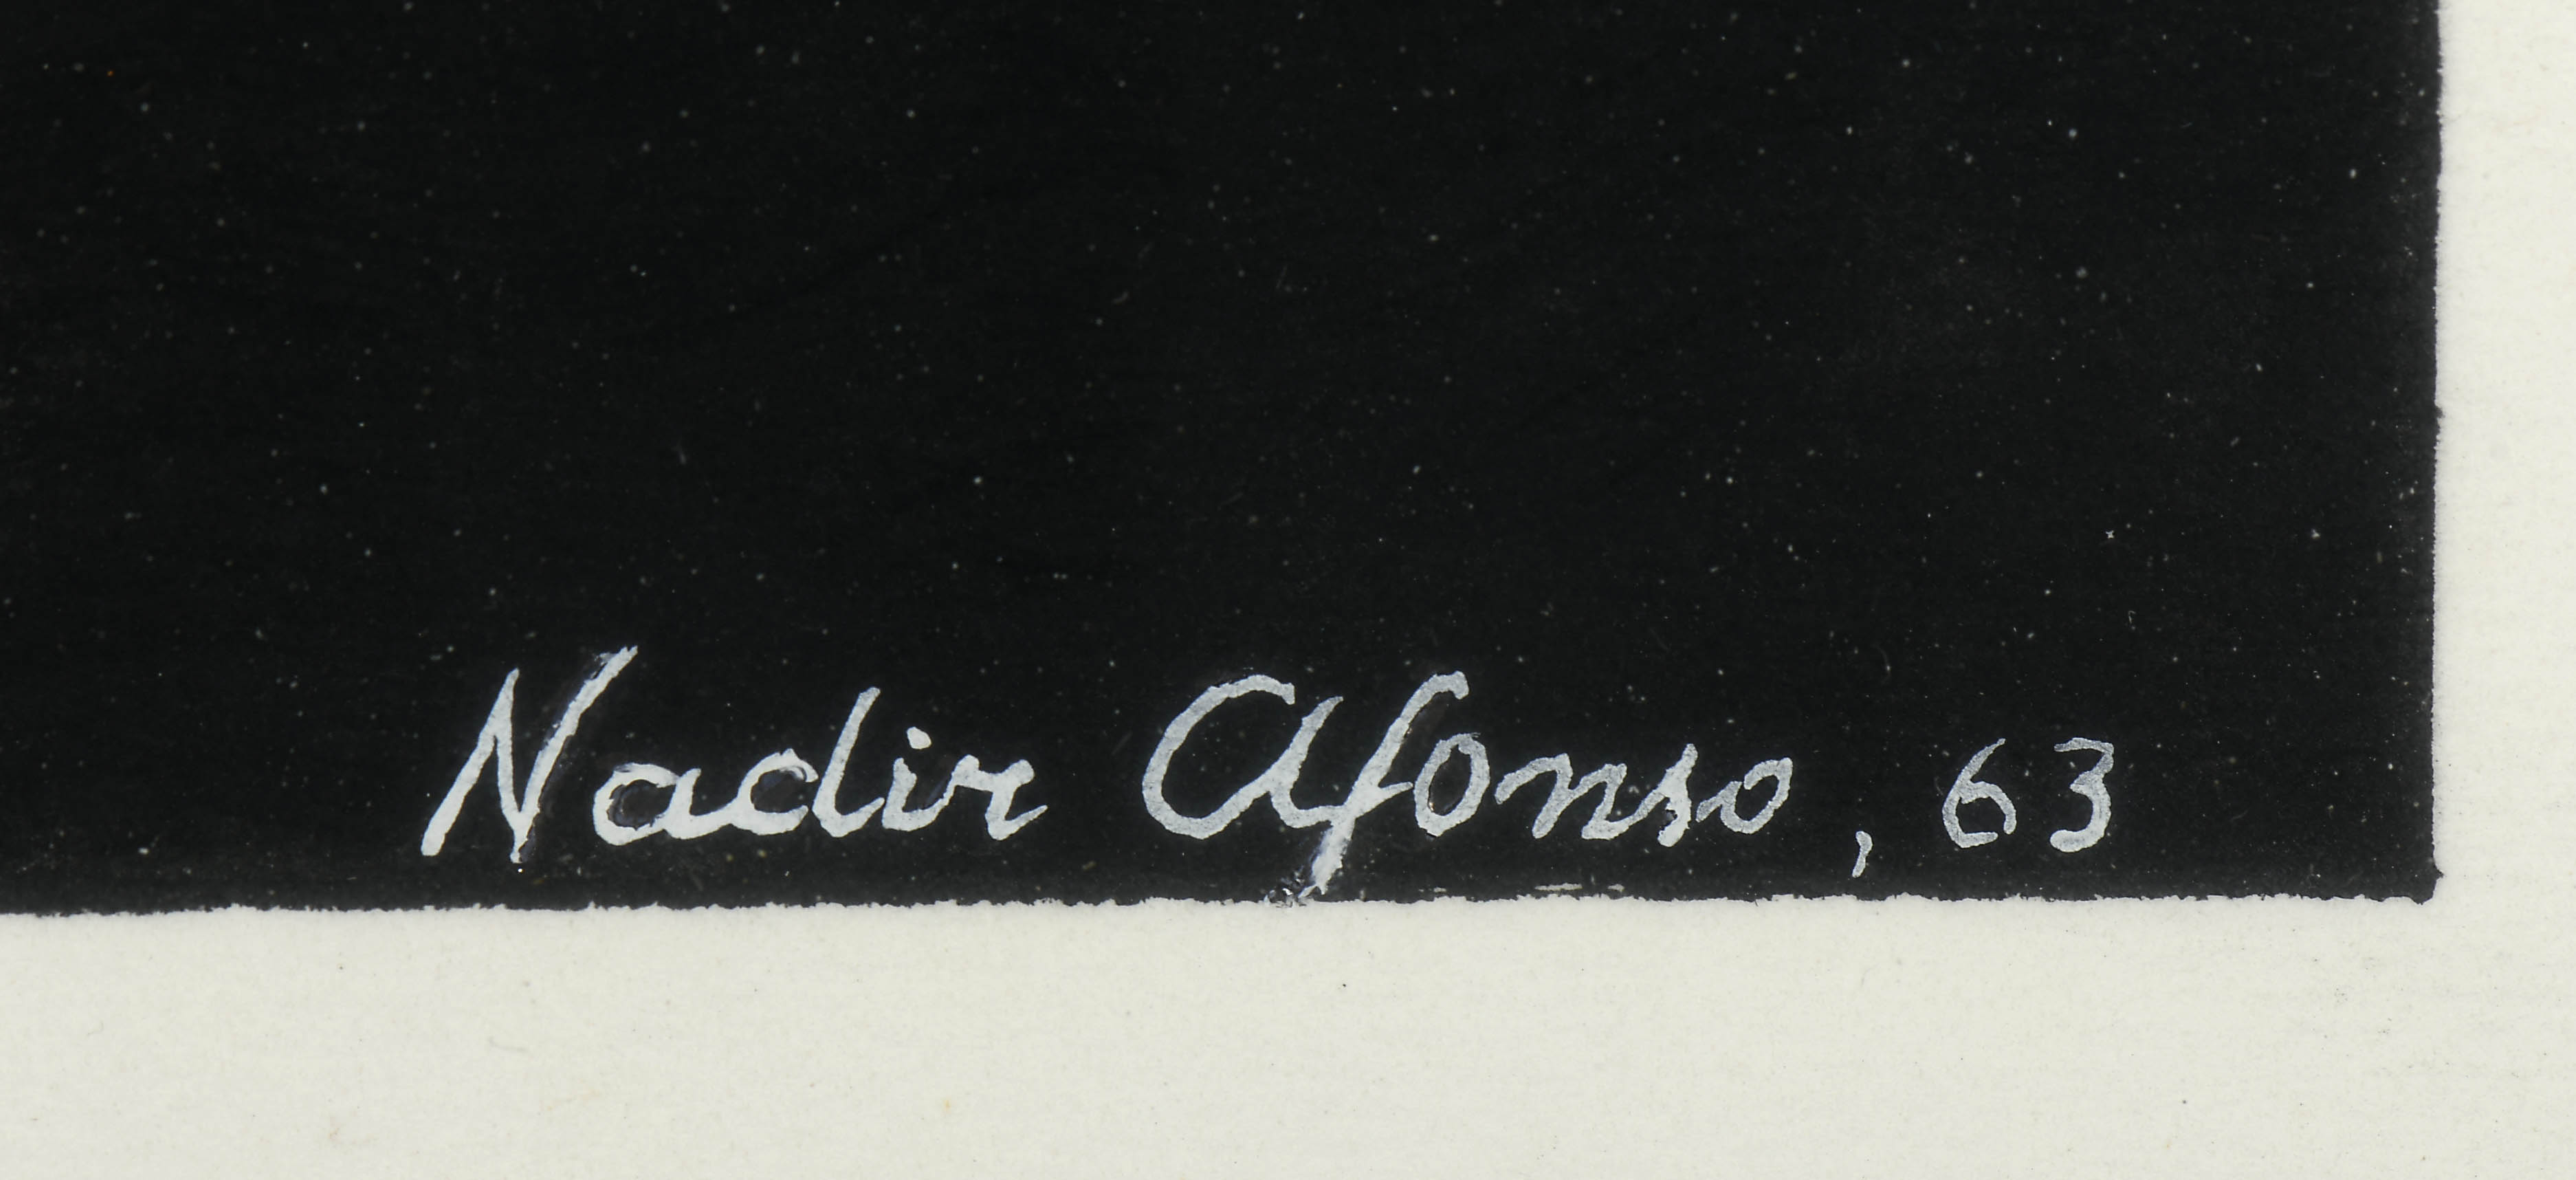 NADIR AFONSO - 1920-2013 - Image 3 of 3